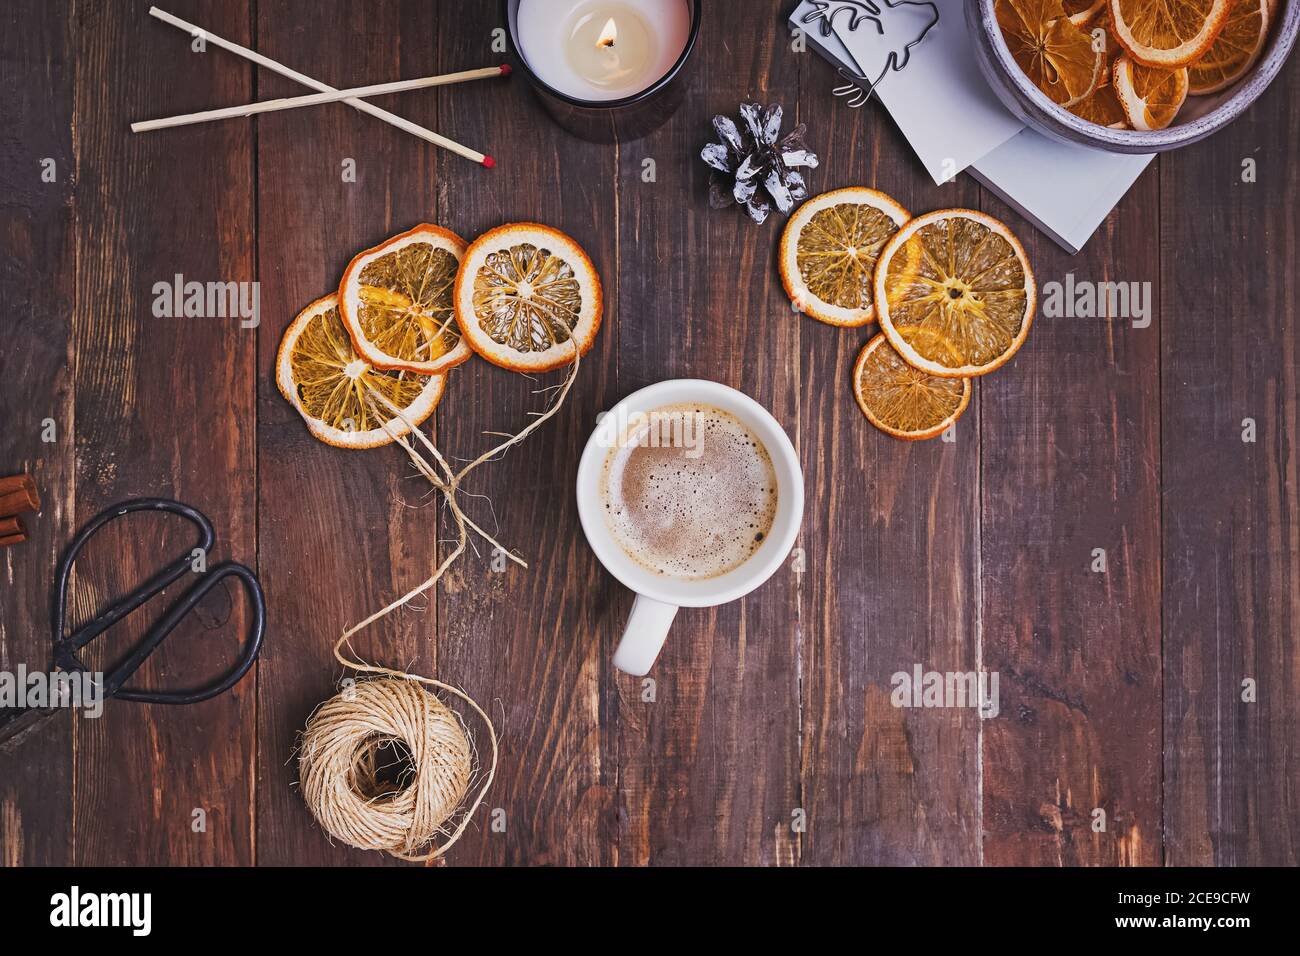 Séchez les oranges, le café et la bougie sur une table en bois Banque D'Images